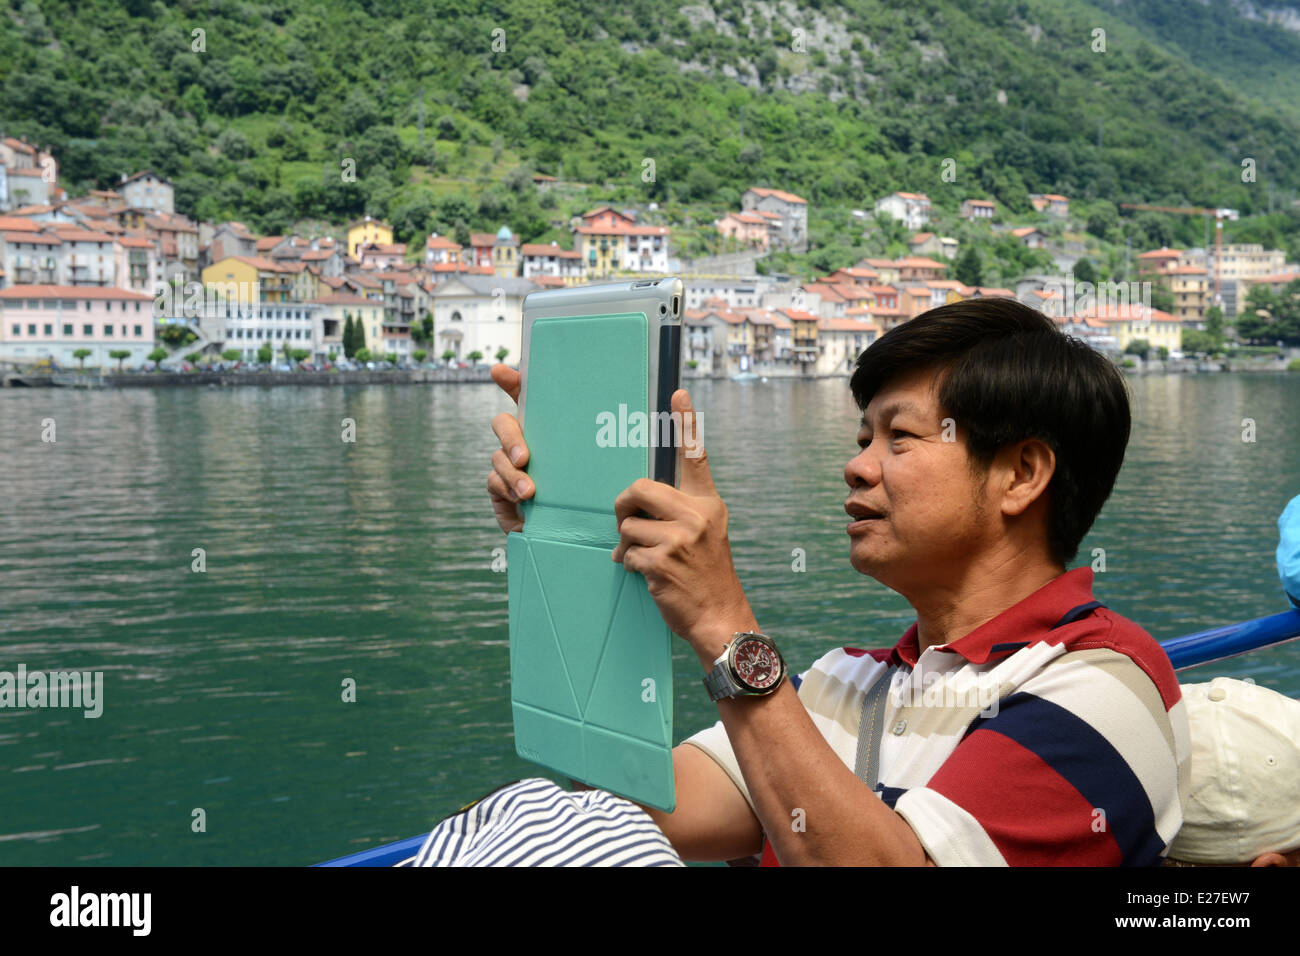 Man taking photograph avec onjess avec caméra de tablette ipad ipad case / photographie photographie photos de vacances touristiques modernes Banque D'Images